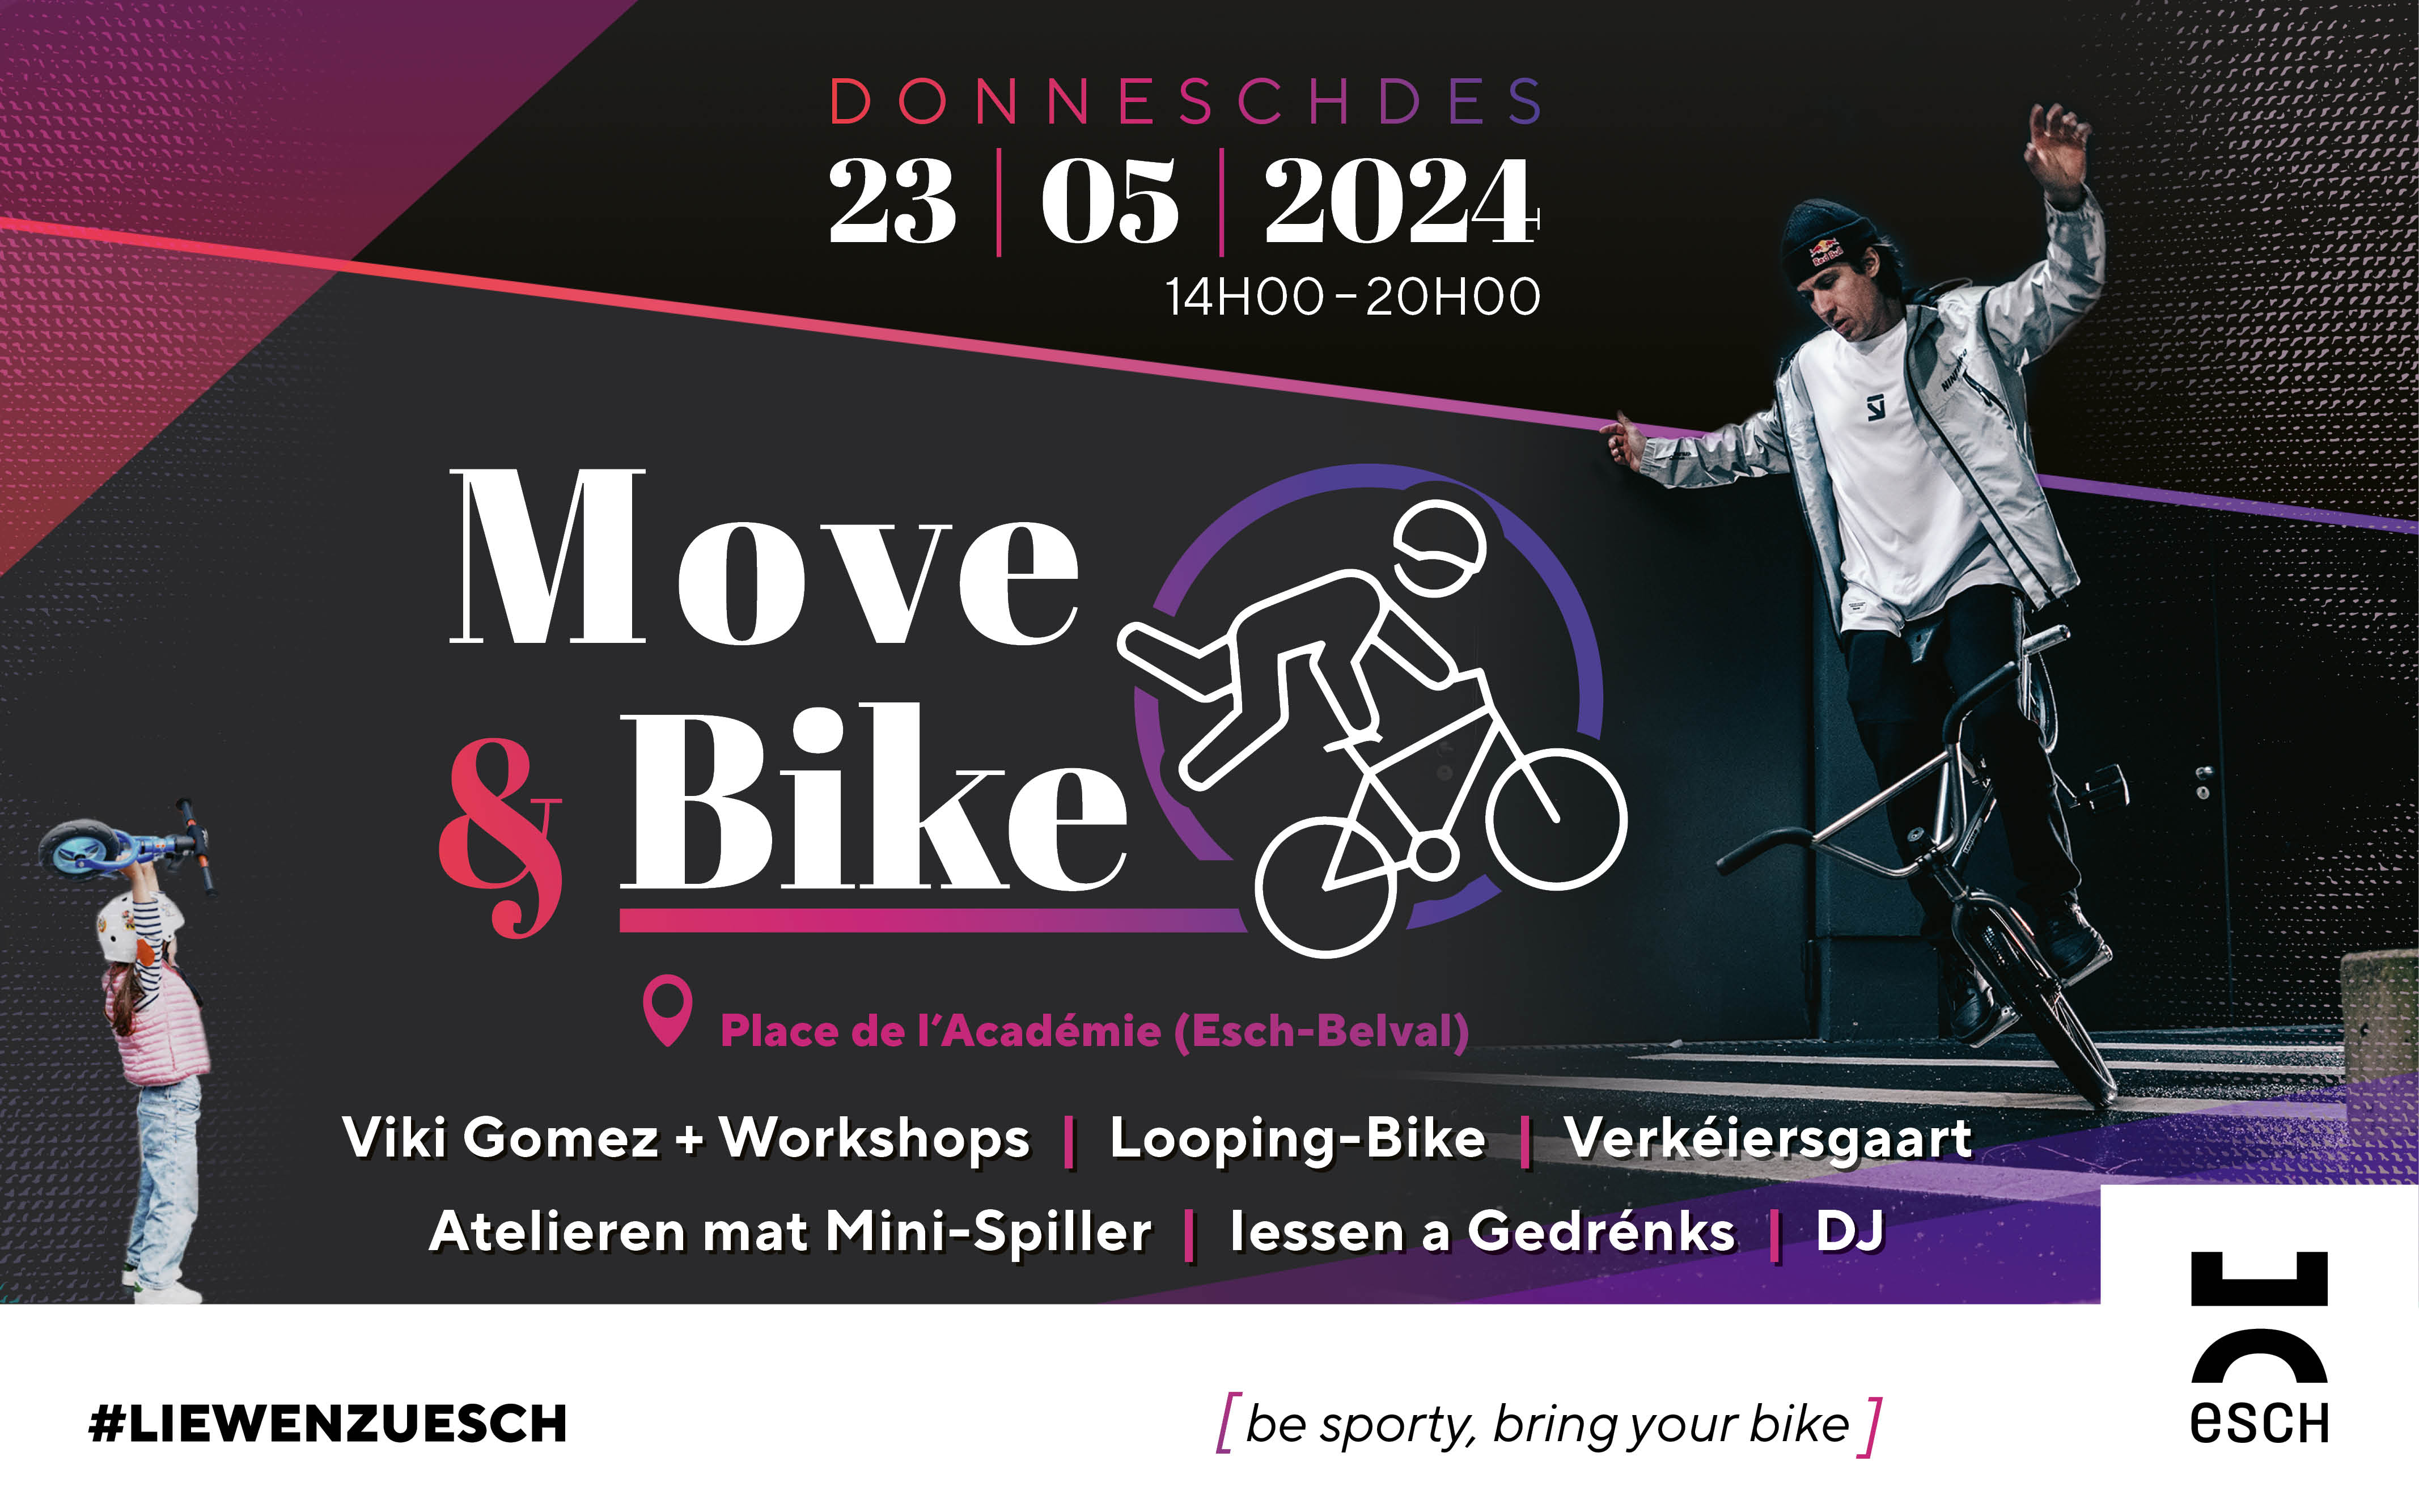 Move & bike